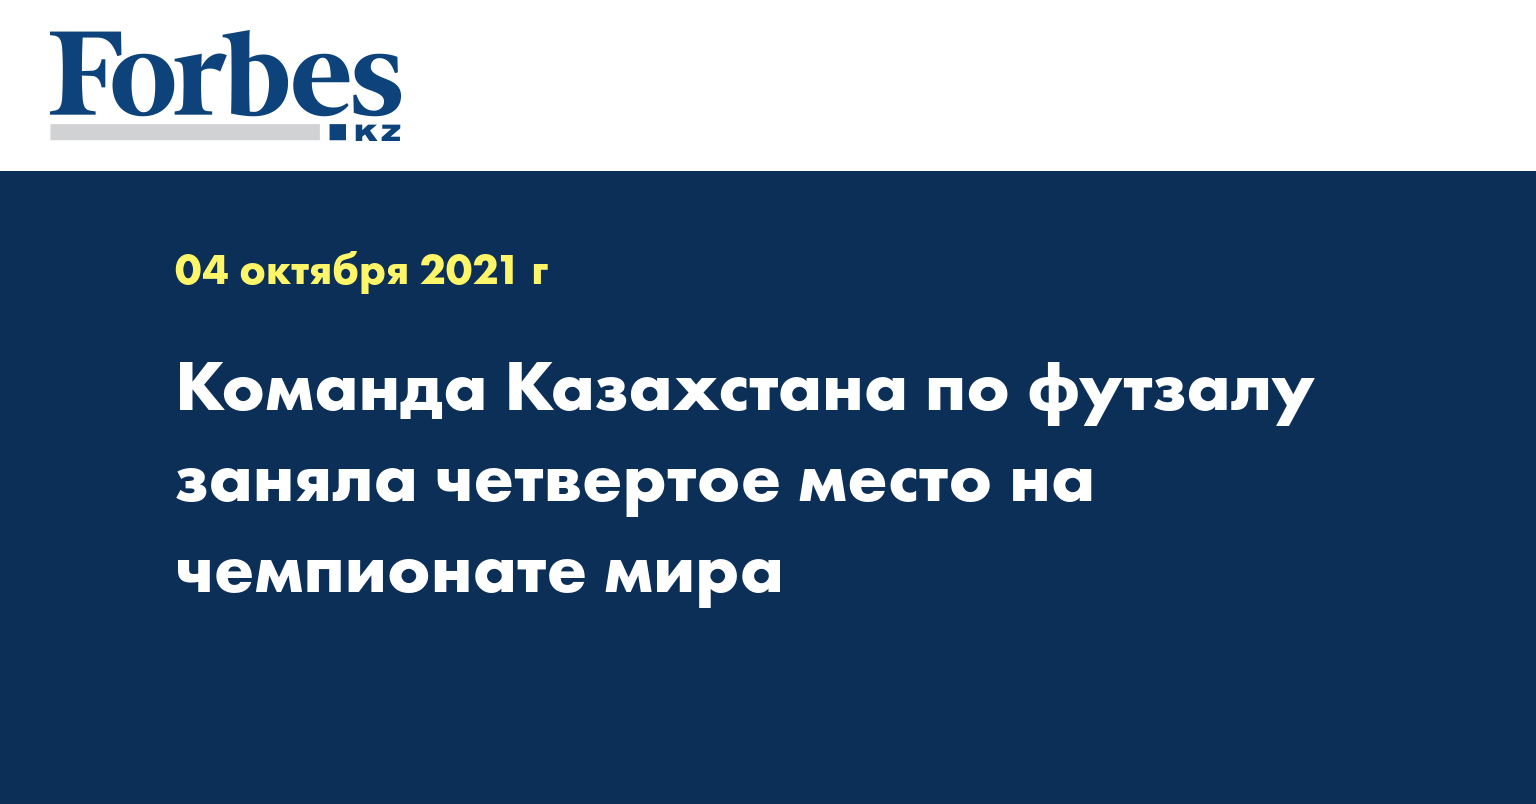 Команда Казахстана по футзалу заняла четвертое место на чемпионате мира